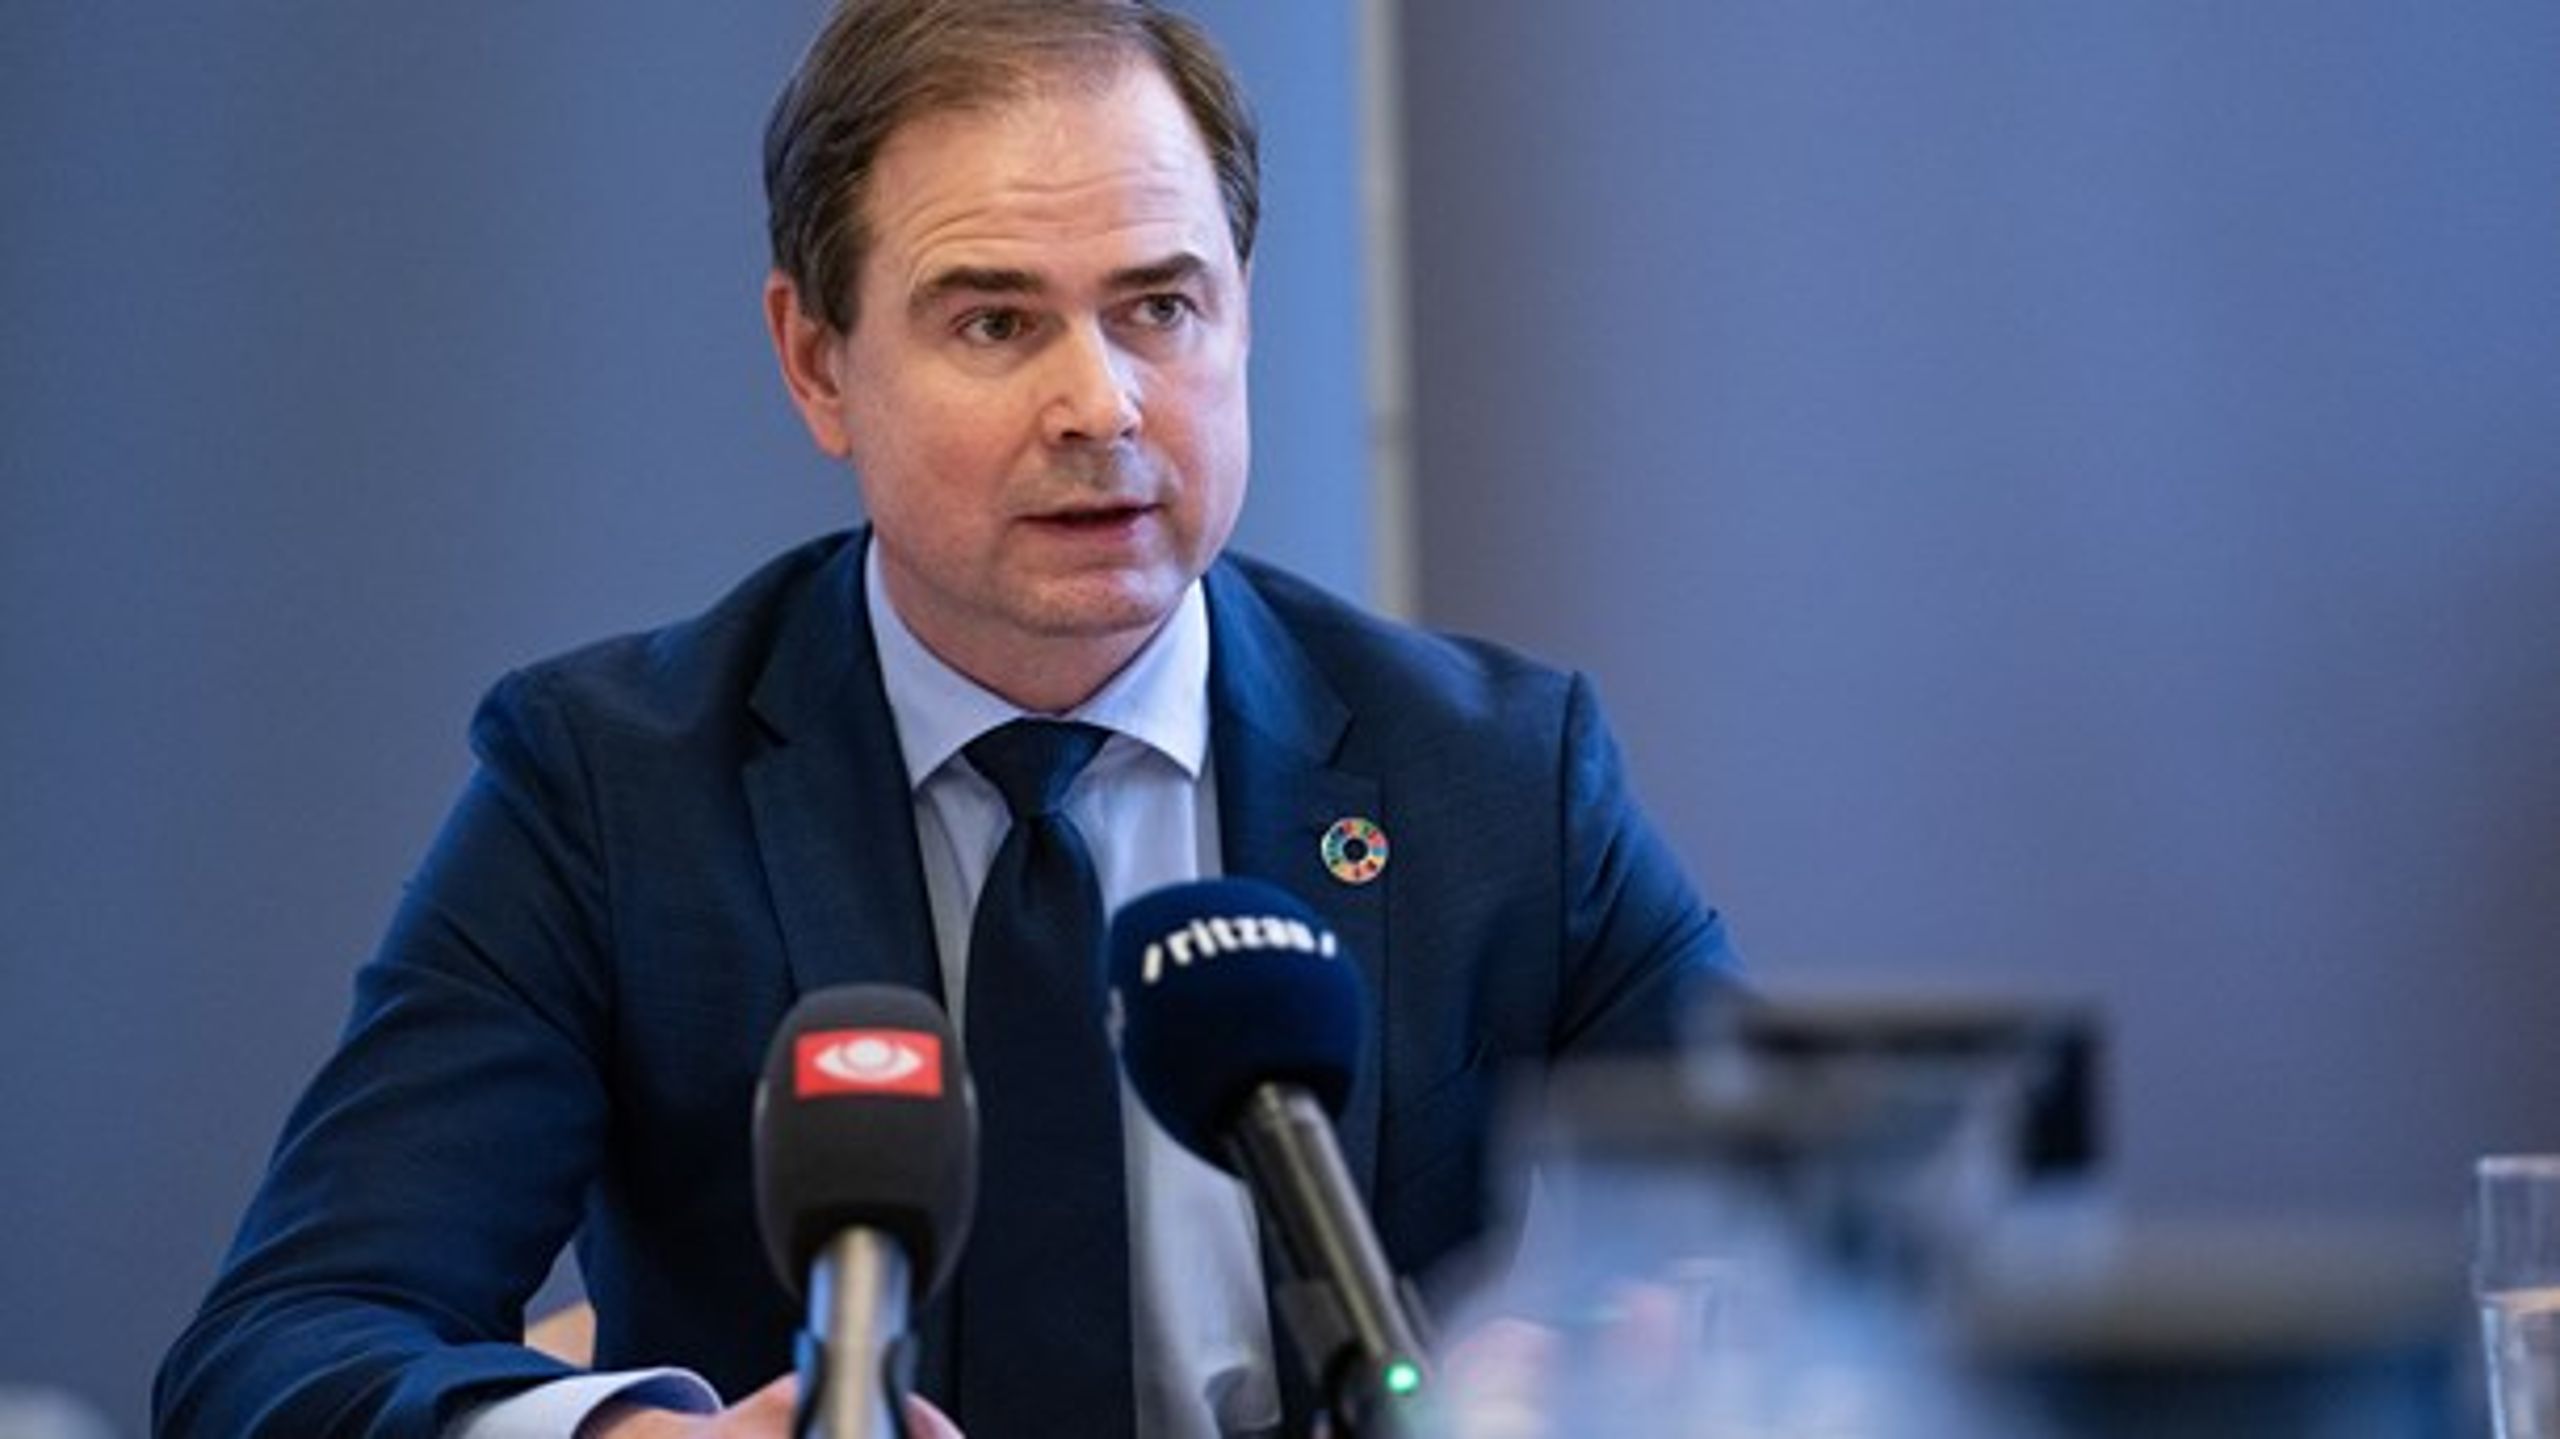 Nicolai Wammen (S) har meldt ud, at han vil kulegrave Finansministeriets regnemodeller.